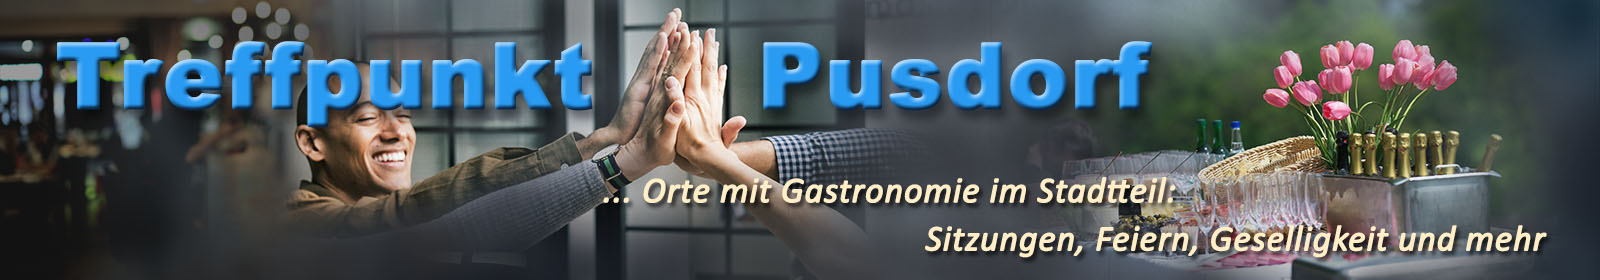 pusdorf.info – Treffpunkt mit Gastronomie